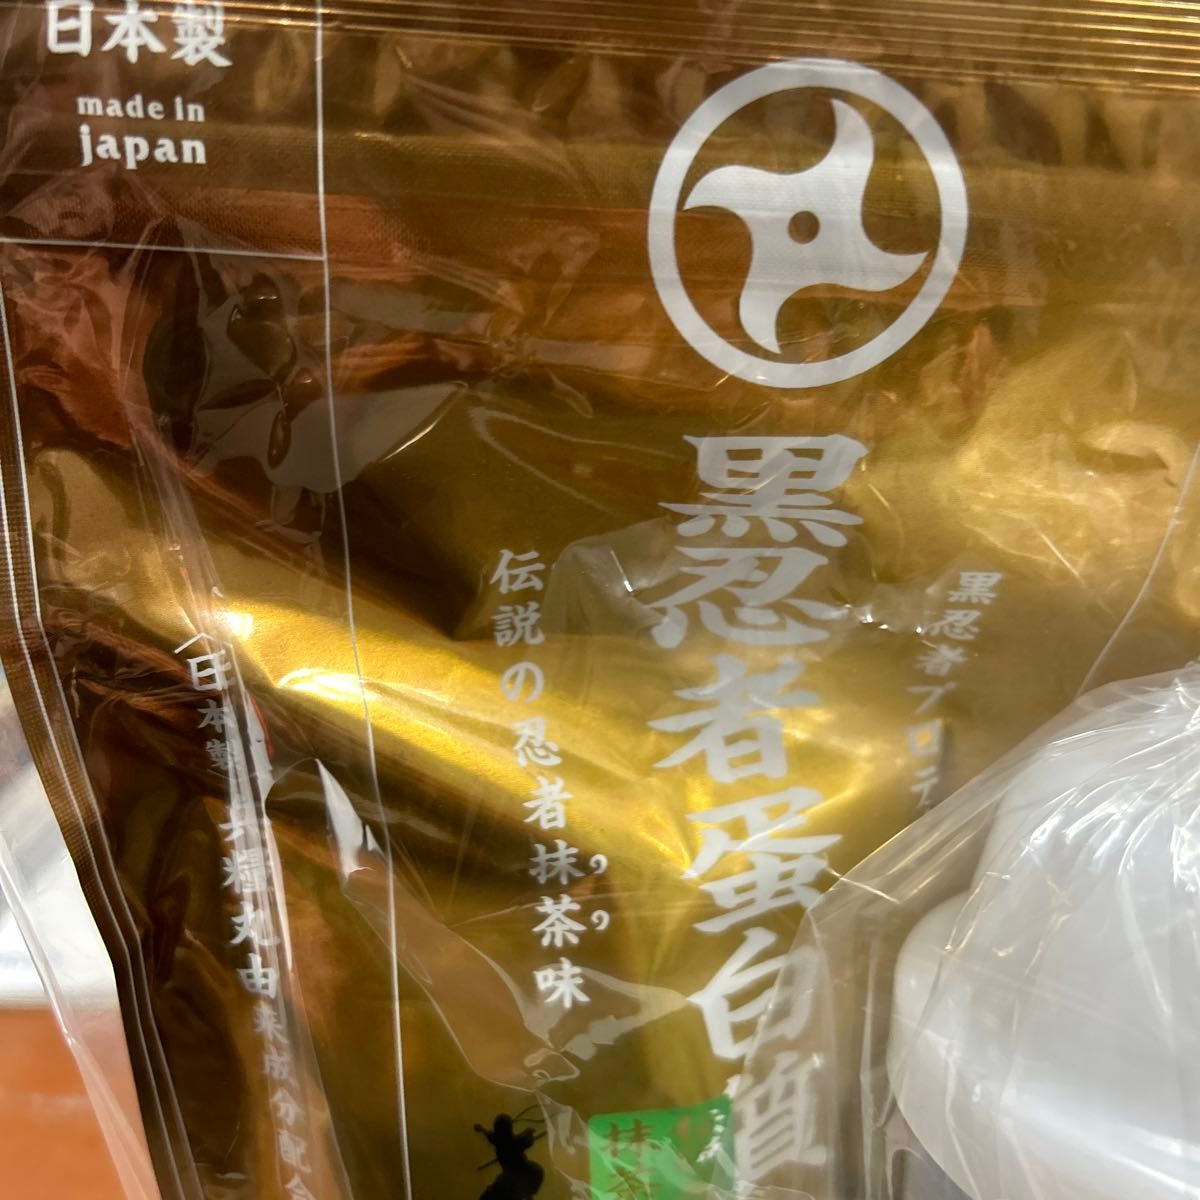 ファイン 黒忍者プロテイン 抹茶味 300g (1個)